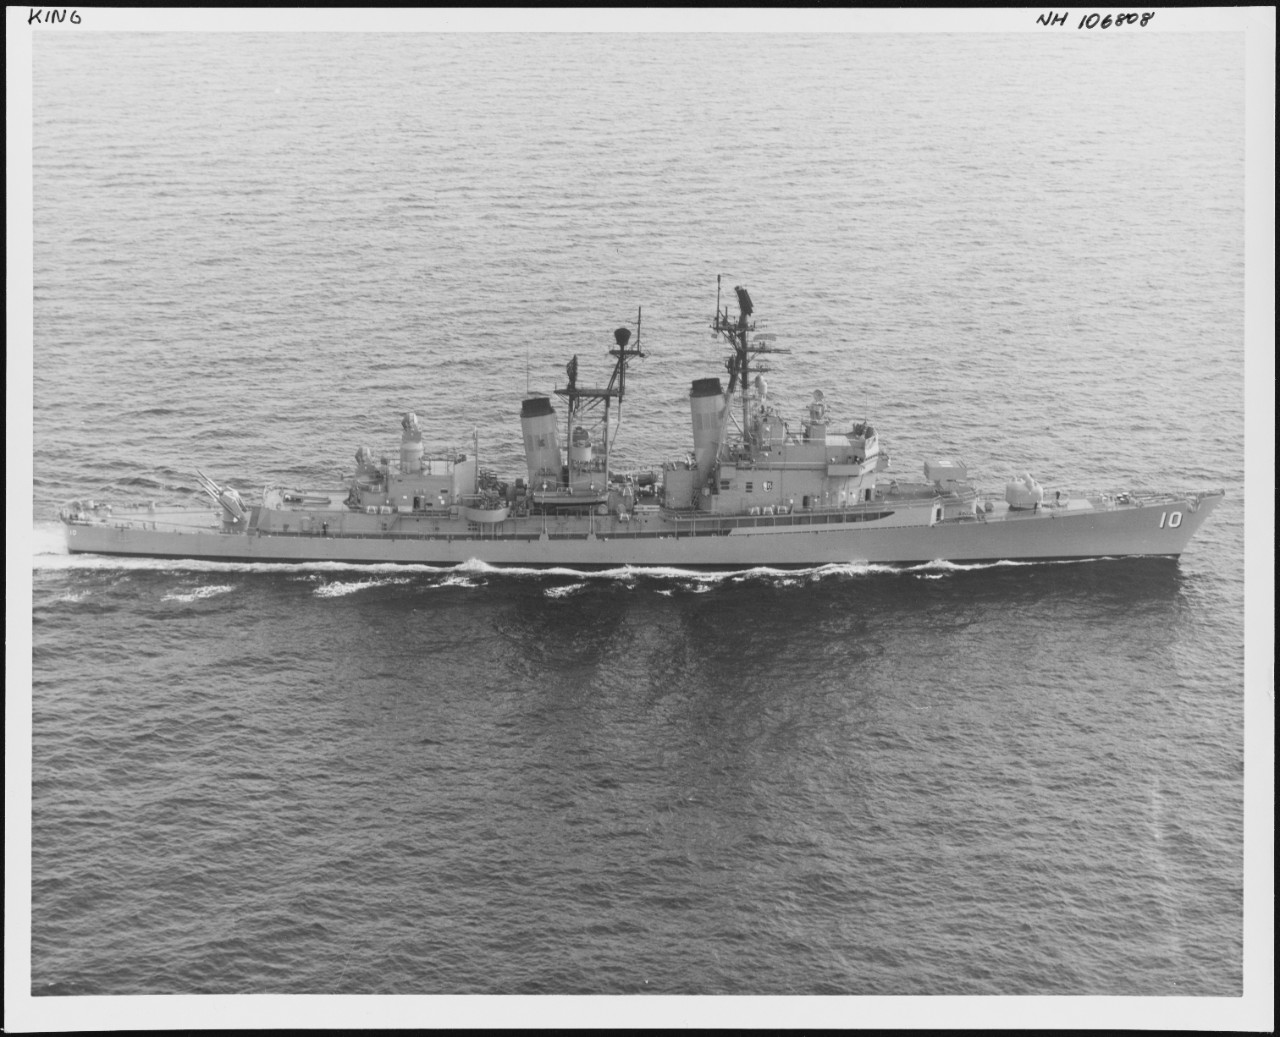 Photo # NH 106808  USS King